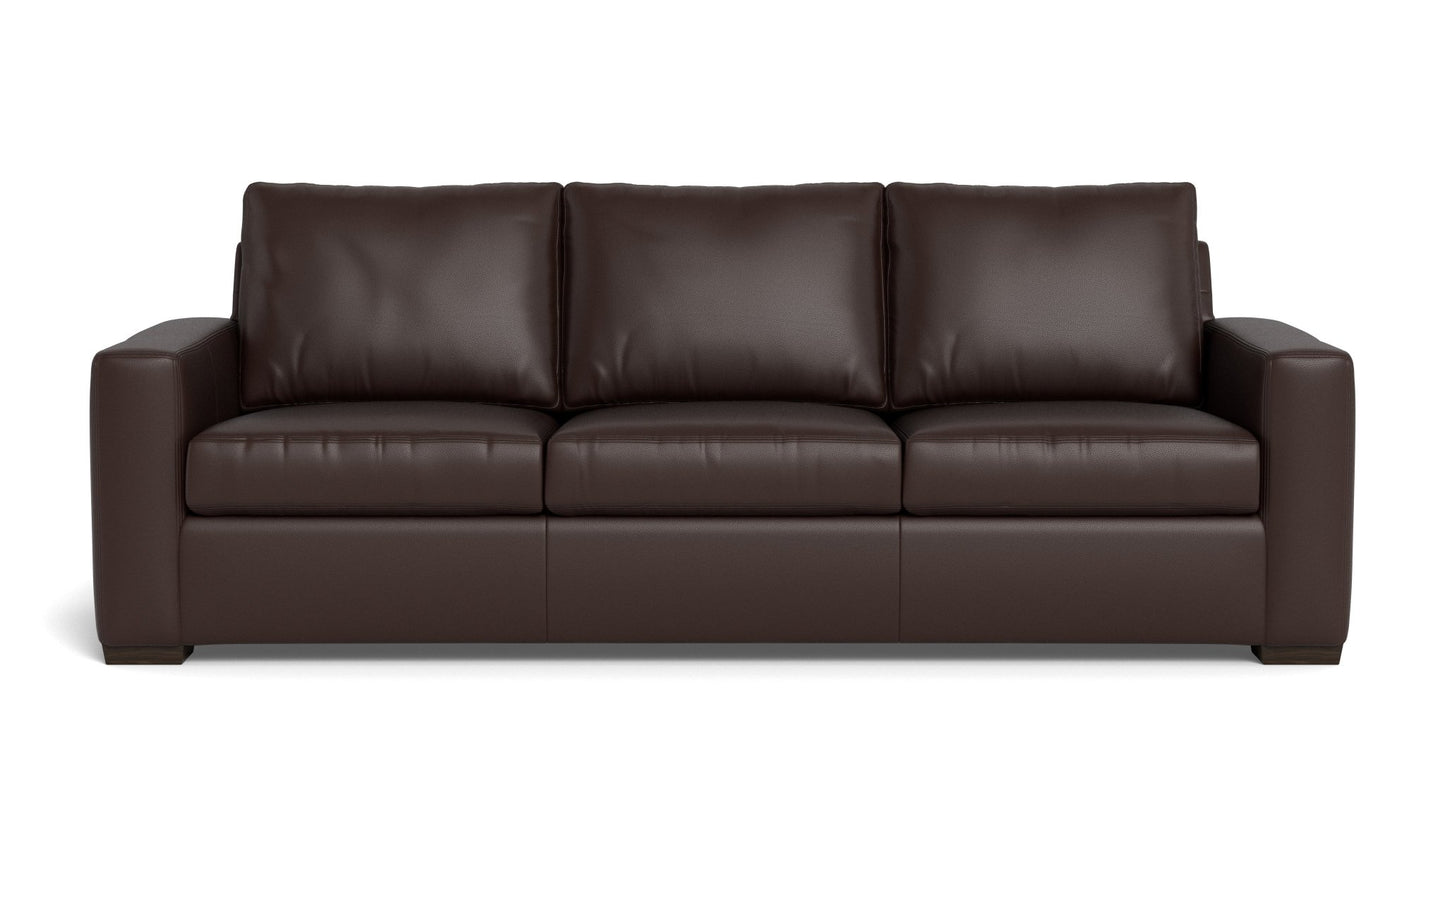 Mesa Leather Estate Sofa